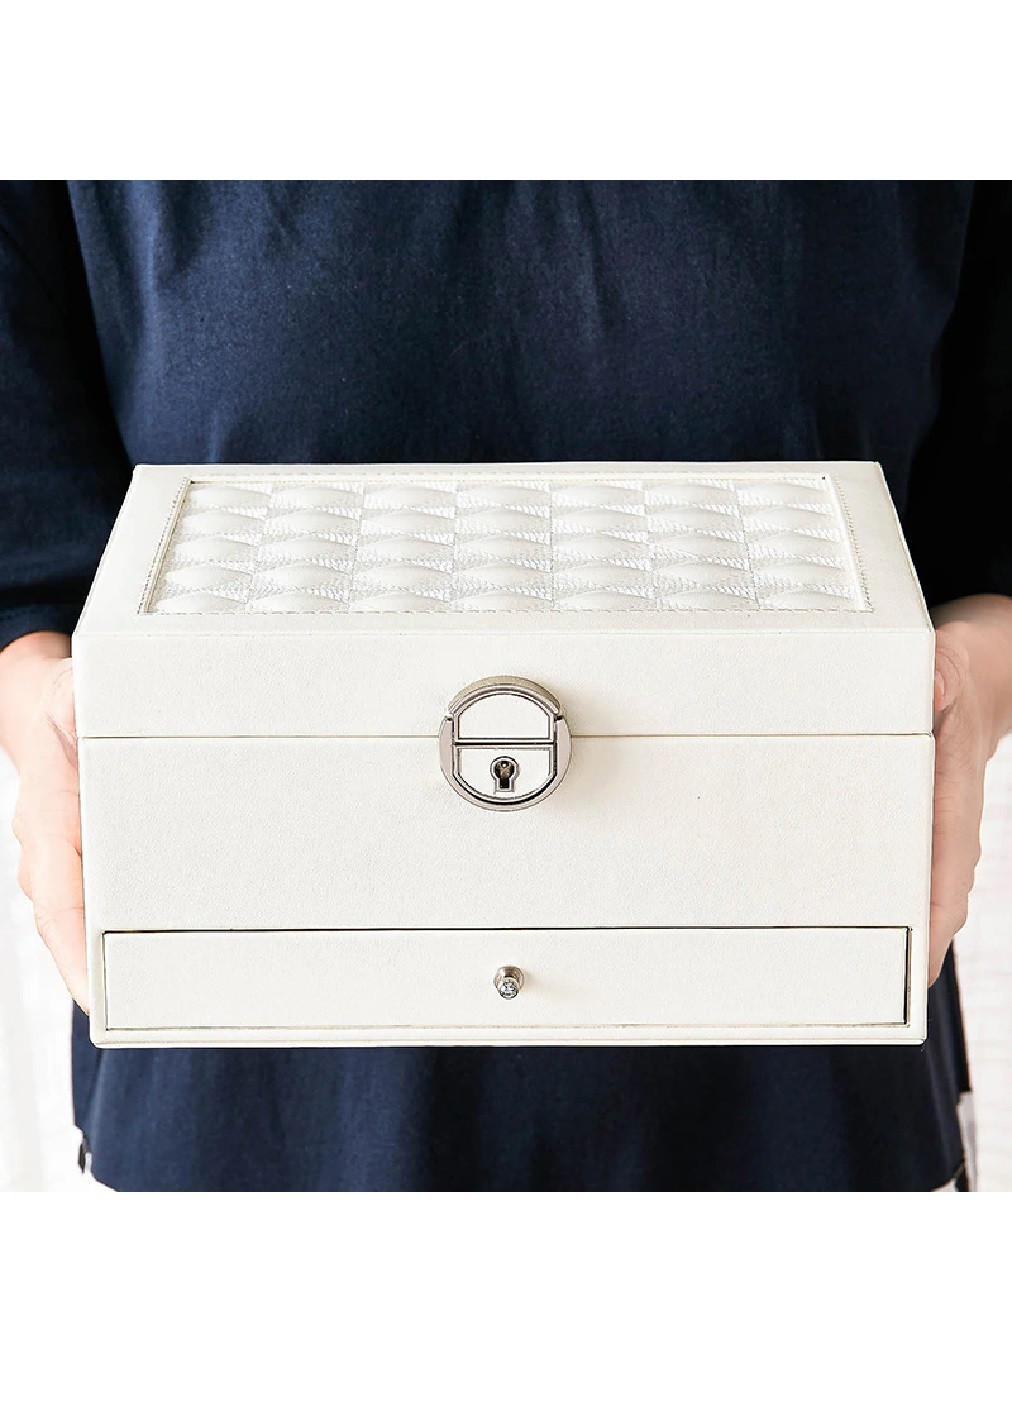 Скринька скриня органайзер коробка футляр для зберігання прикрас біжутерії еко шкіра 23х17.5х12 см (474624-Prob) Біла Unbranded (259137775)